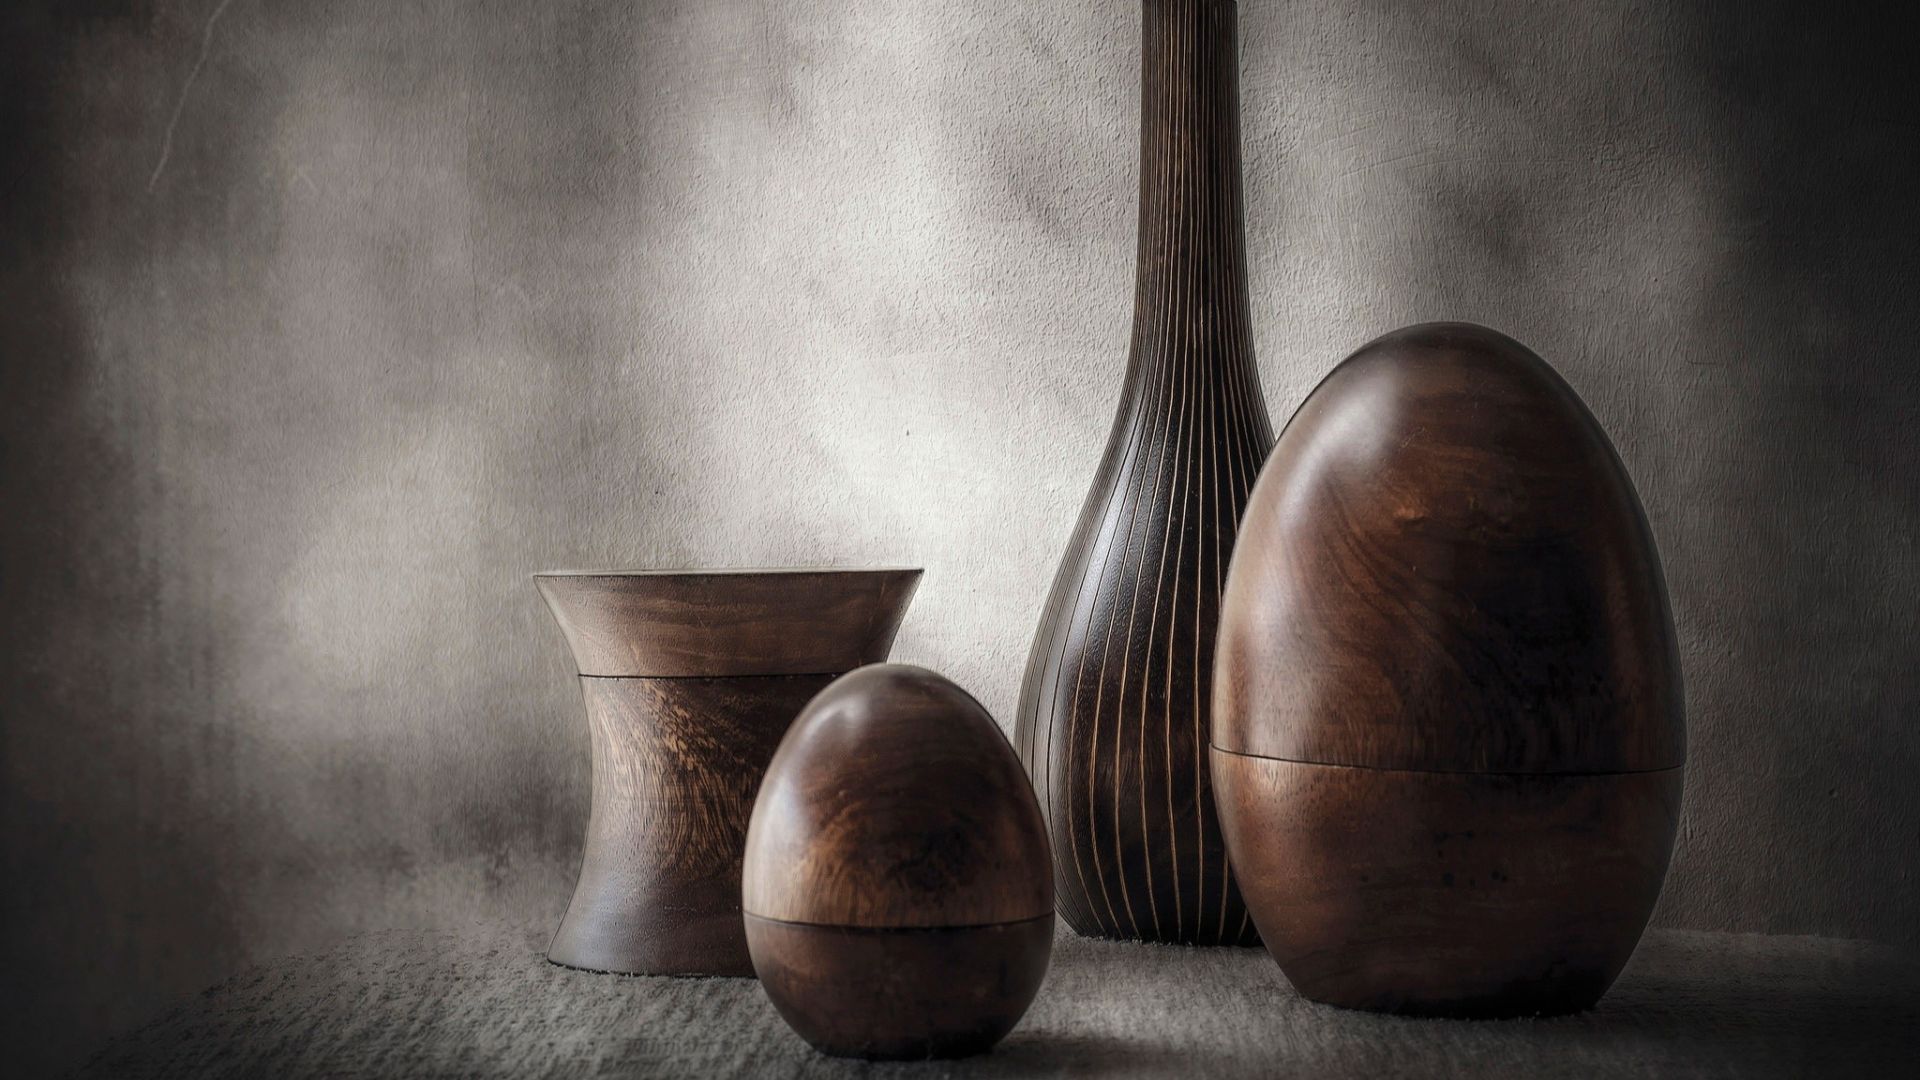 Wallpaper Wooden vases